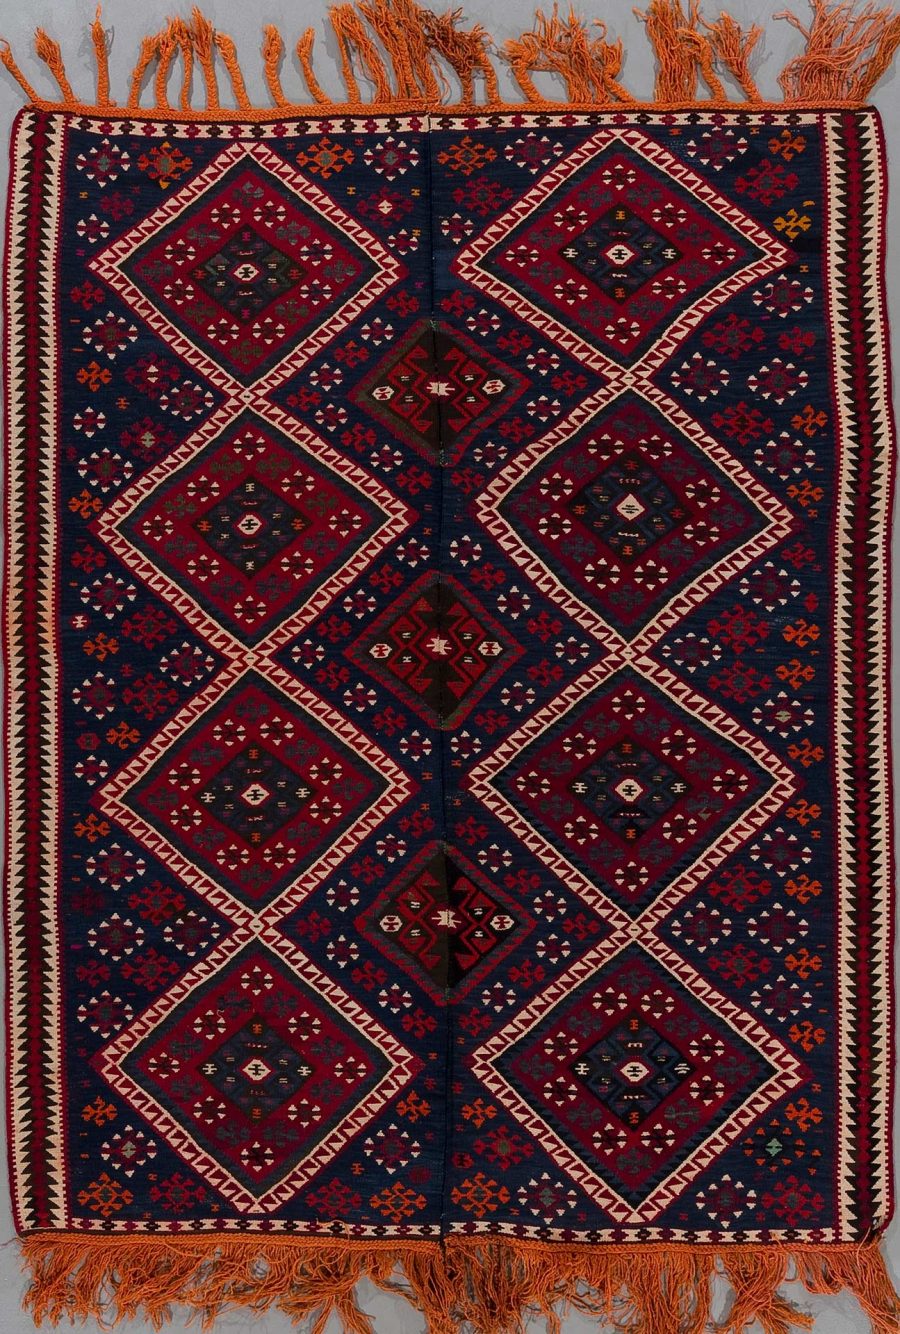 Traditioneller handgewebter Teppich mit geometrischen Mustern in Dunkelblau und Rot und orangefarbenen Fransen am unteren Ende.